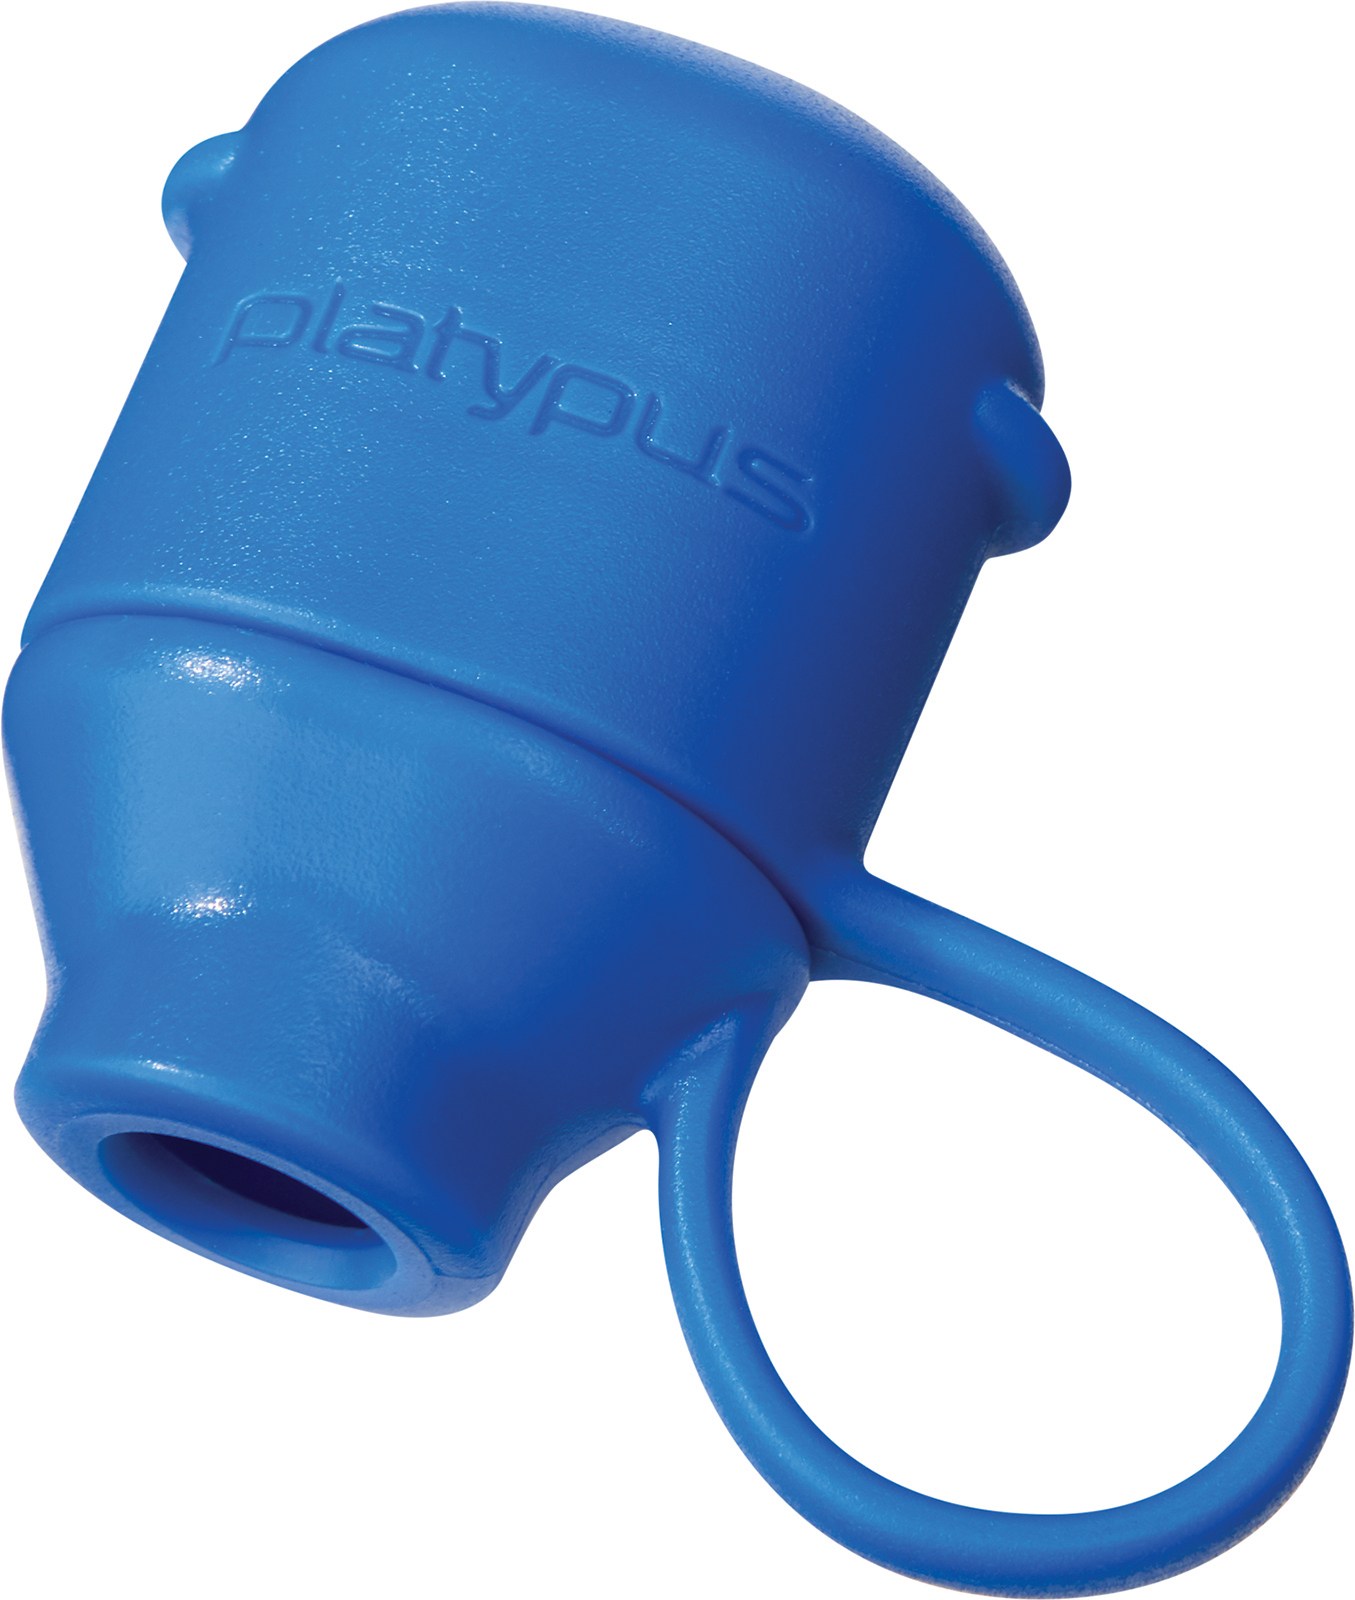 Крышка прикусного клапана Platypus, синий крышка клапана винт для doosan dx daewoo dh150 220 215 225 5 7 крышка клапана винт резиновая прокладка запчасти для экскаватора бесплатная доставка